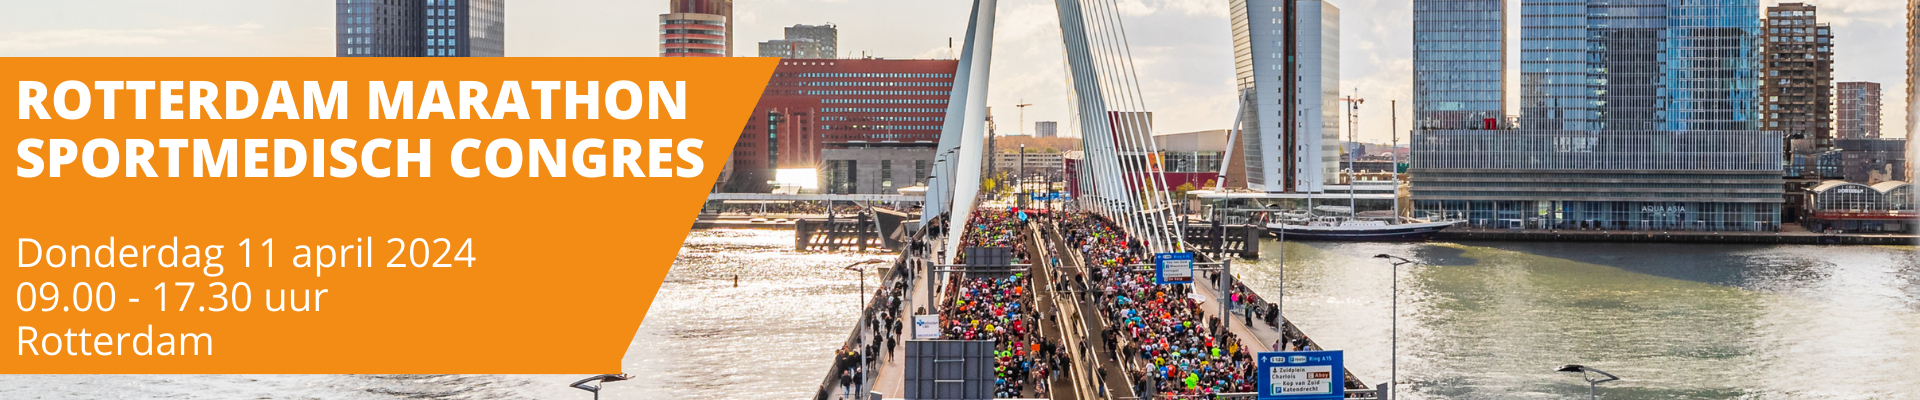 Rotterdam Marathon Sportmedisch Congres 2024